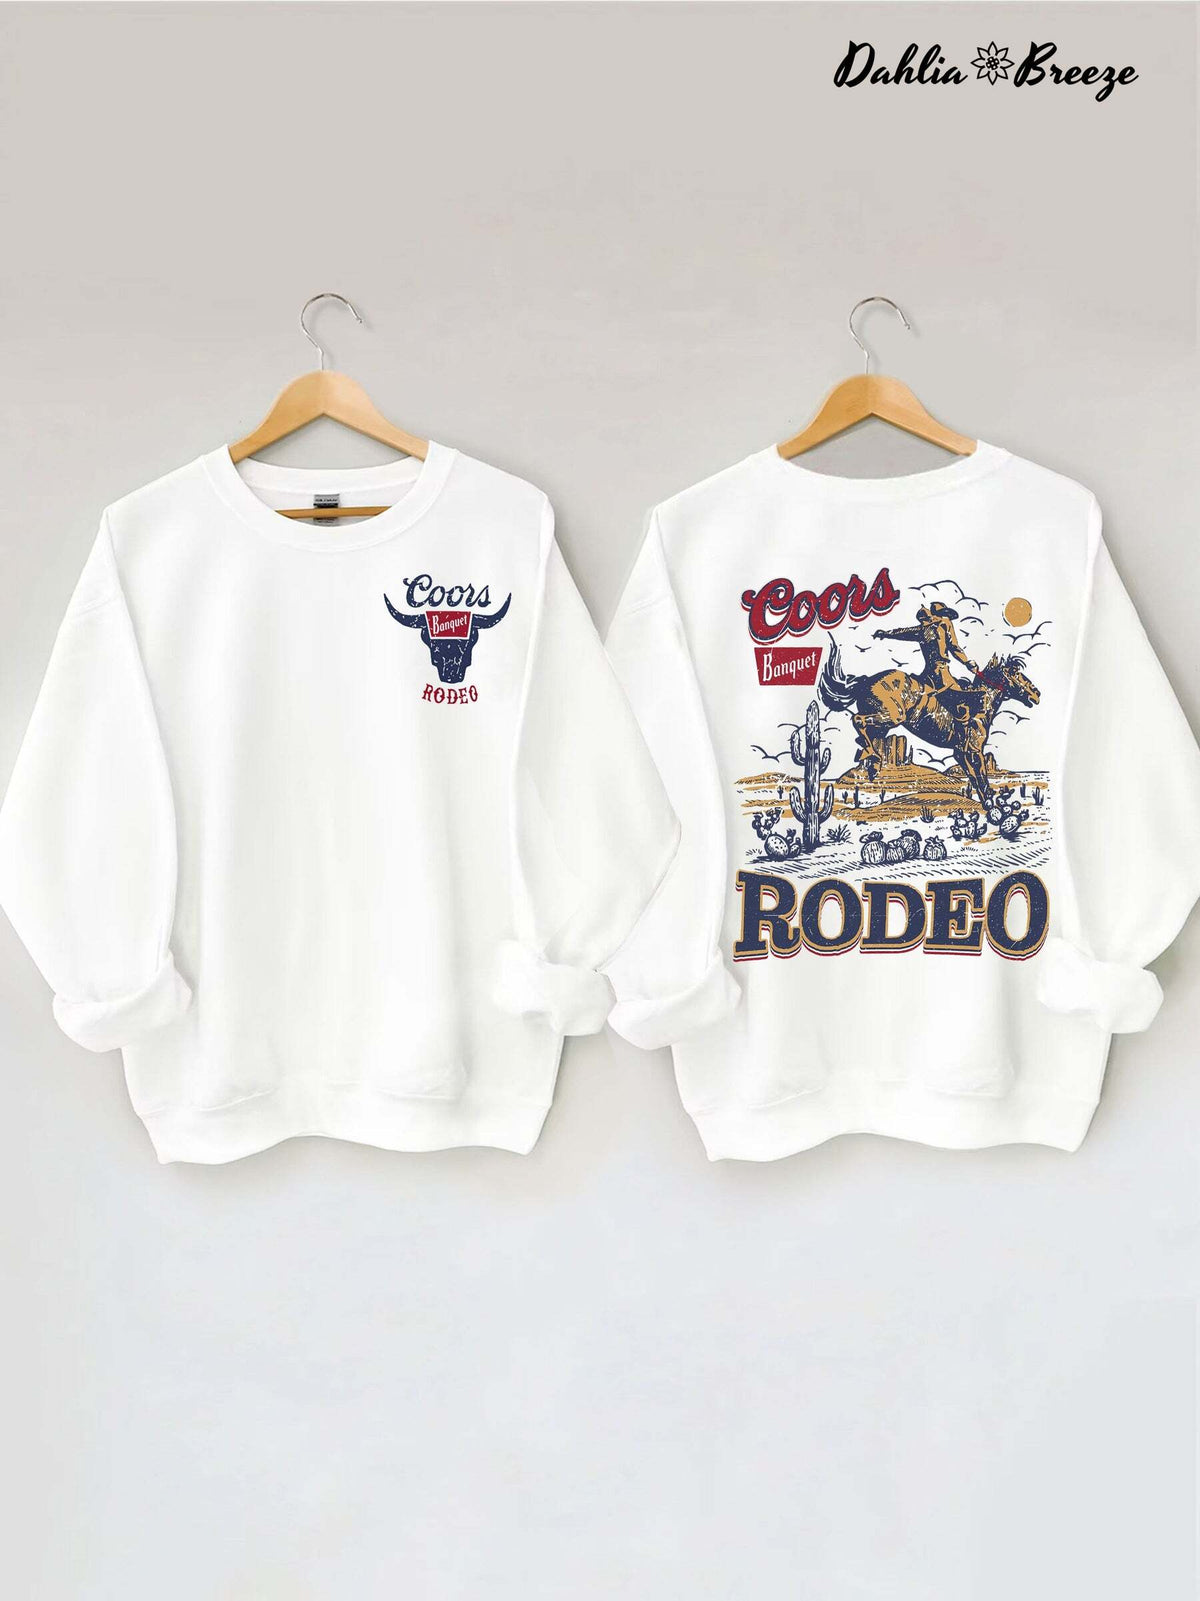 Coors Banquet Rodeo Sweatshirt